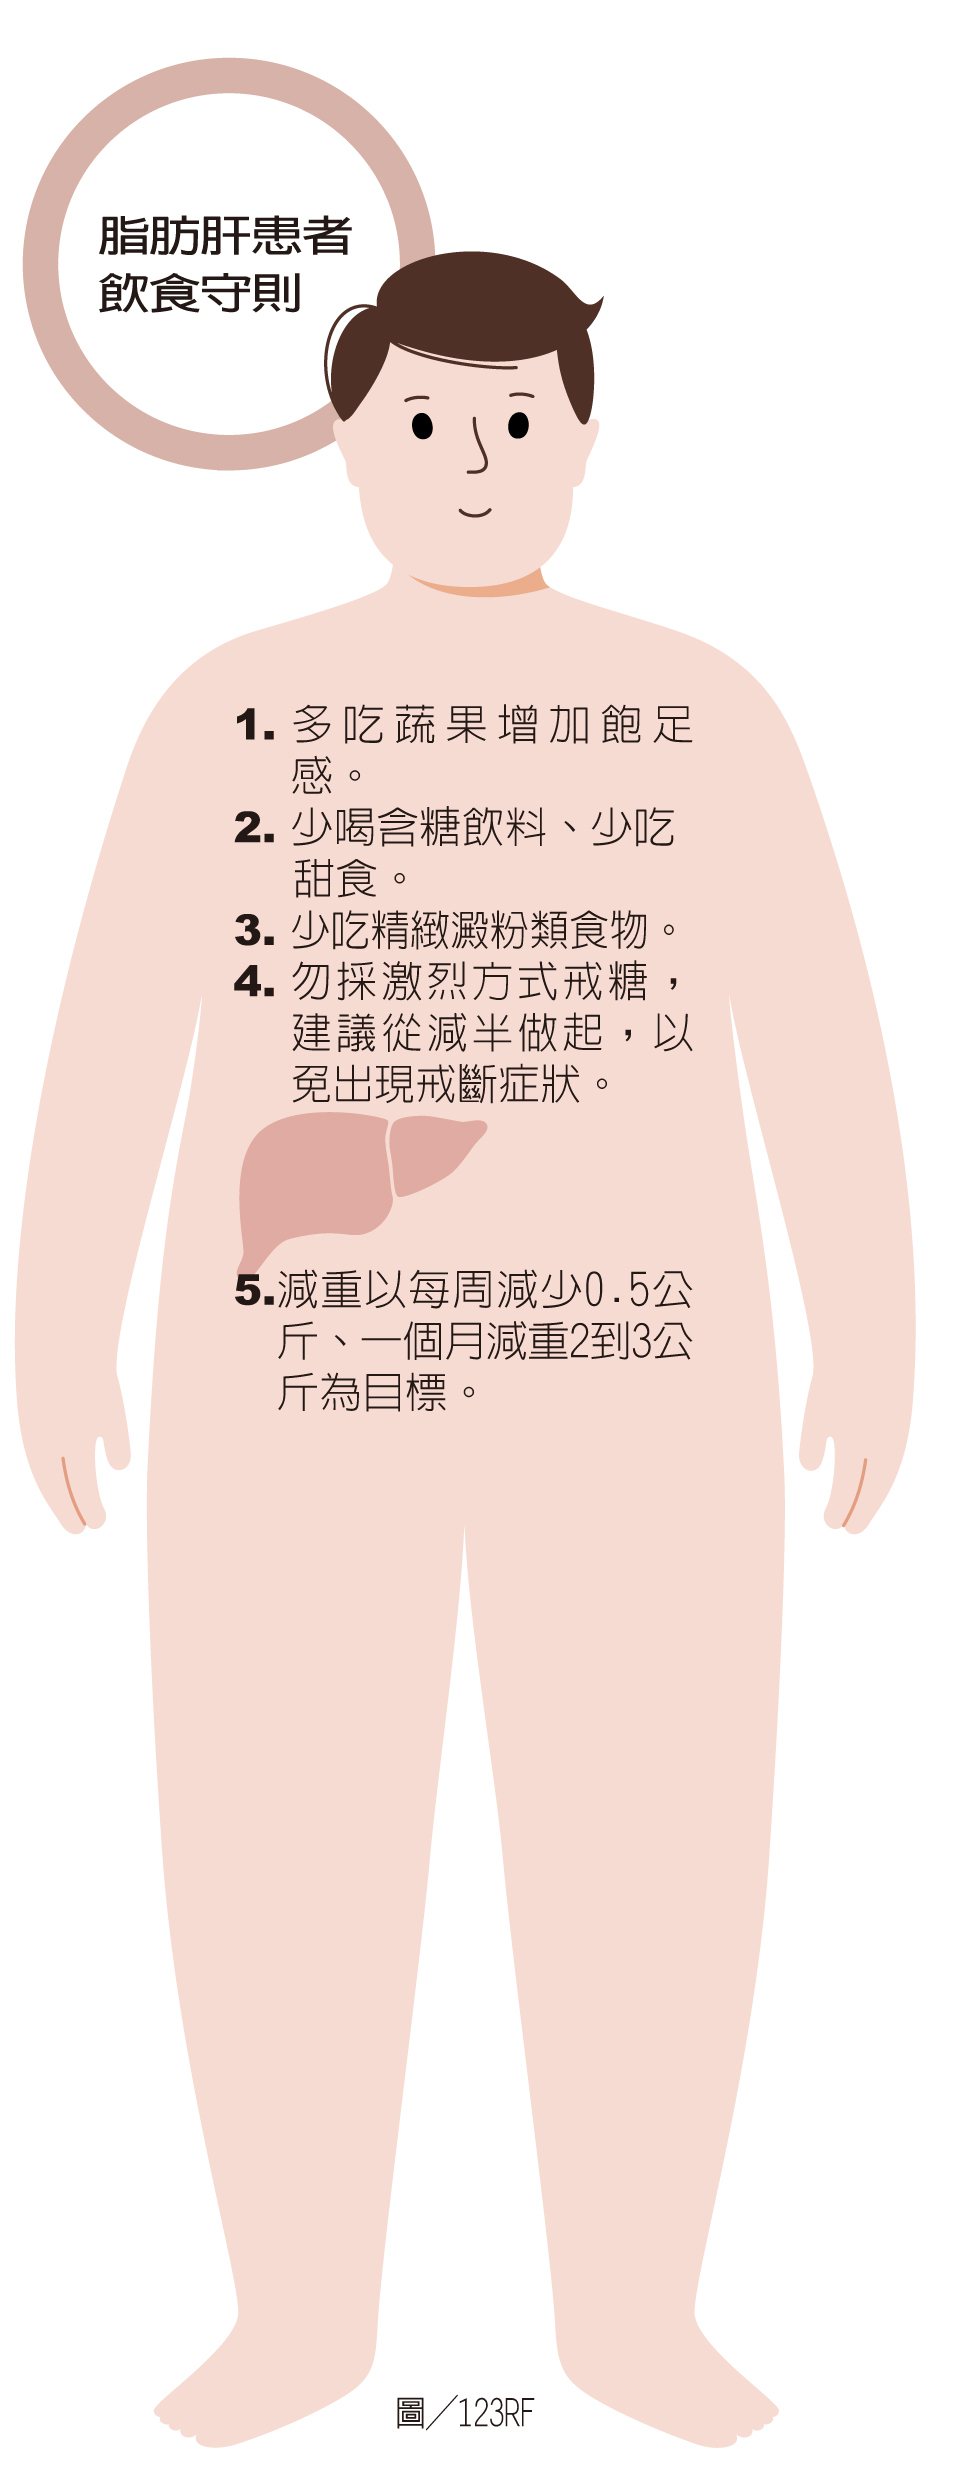 脂肪肝患者飲食守則  製表/元氣周報 圖/123RF